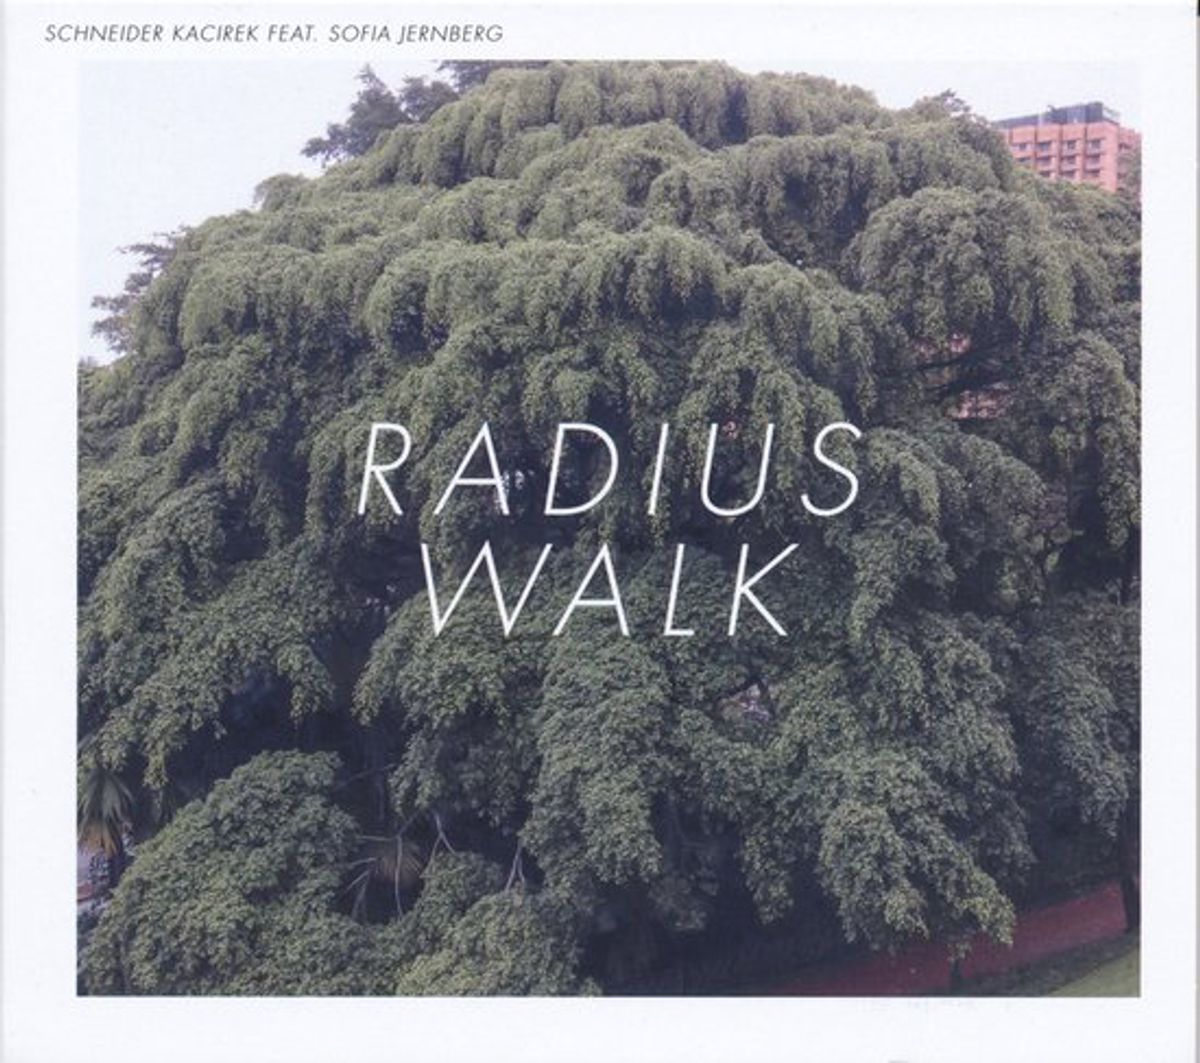 Radius Walk